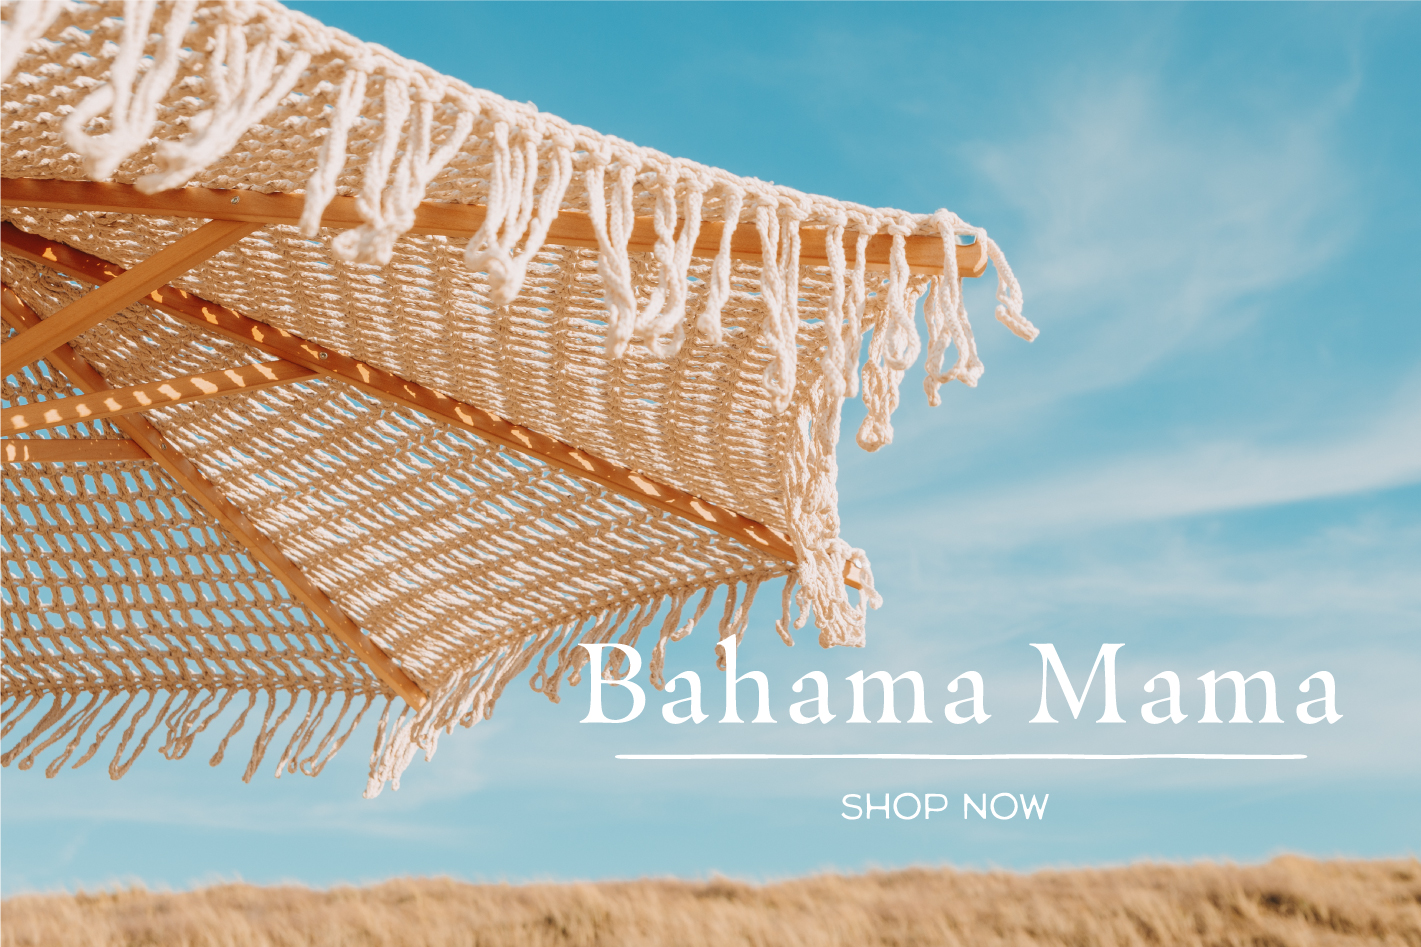 Bahama Mama Parasol